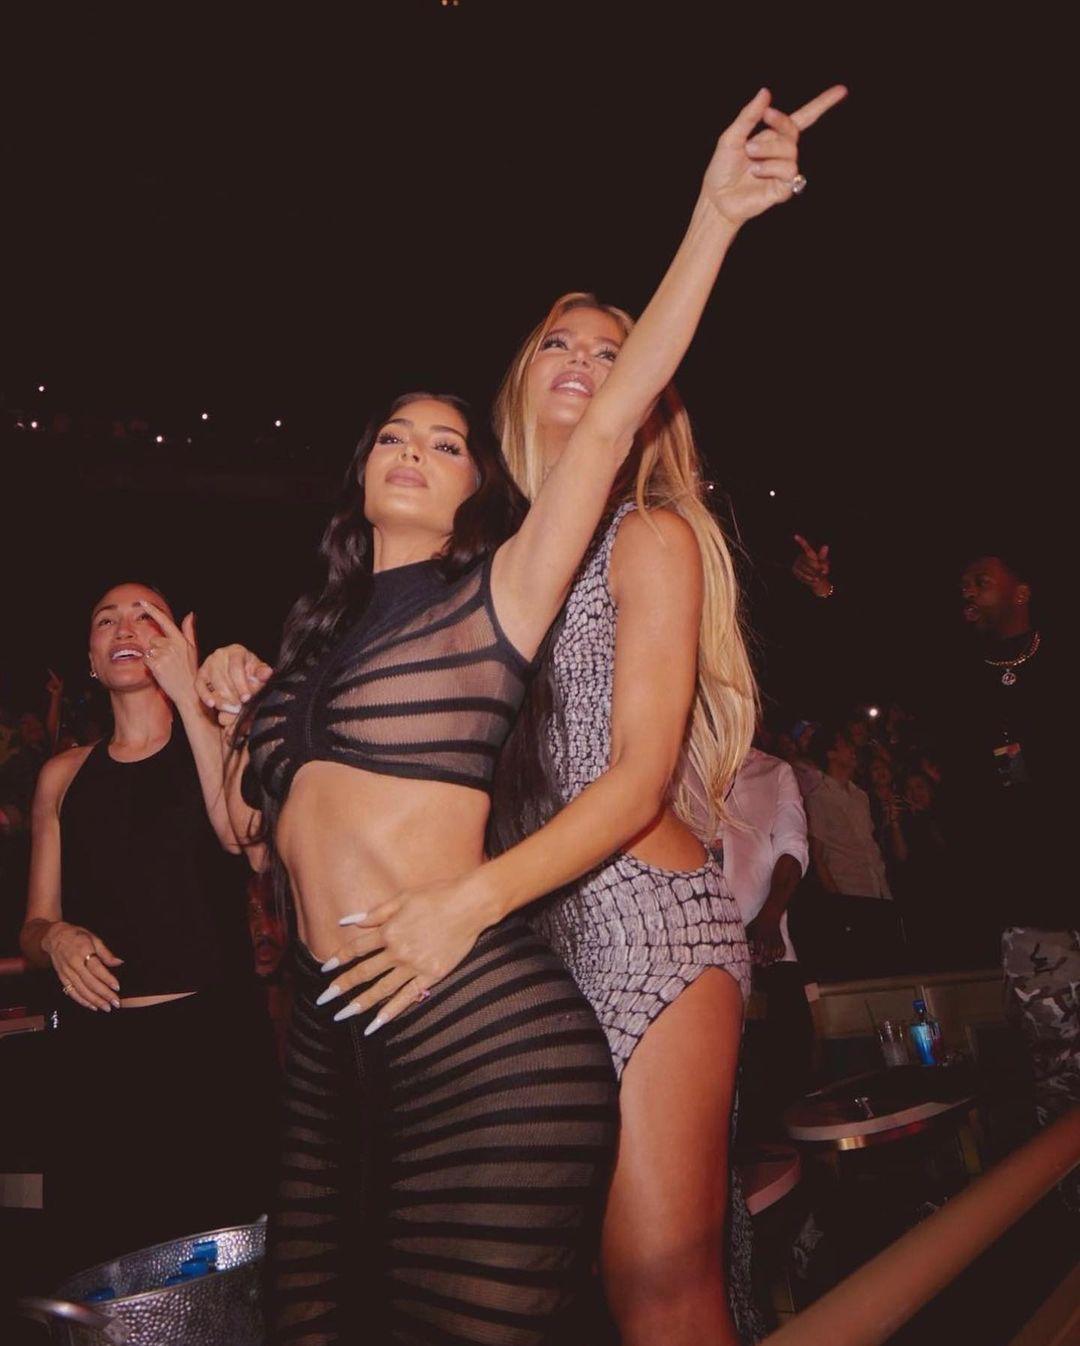 Khloé Kardashian clapped back at Kim Kardashian troll